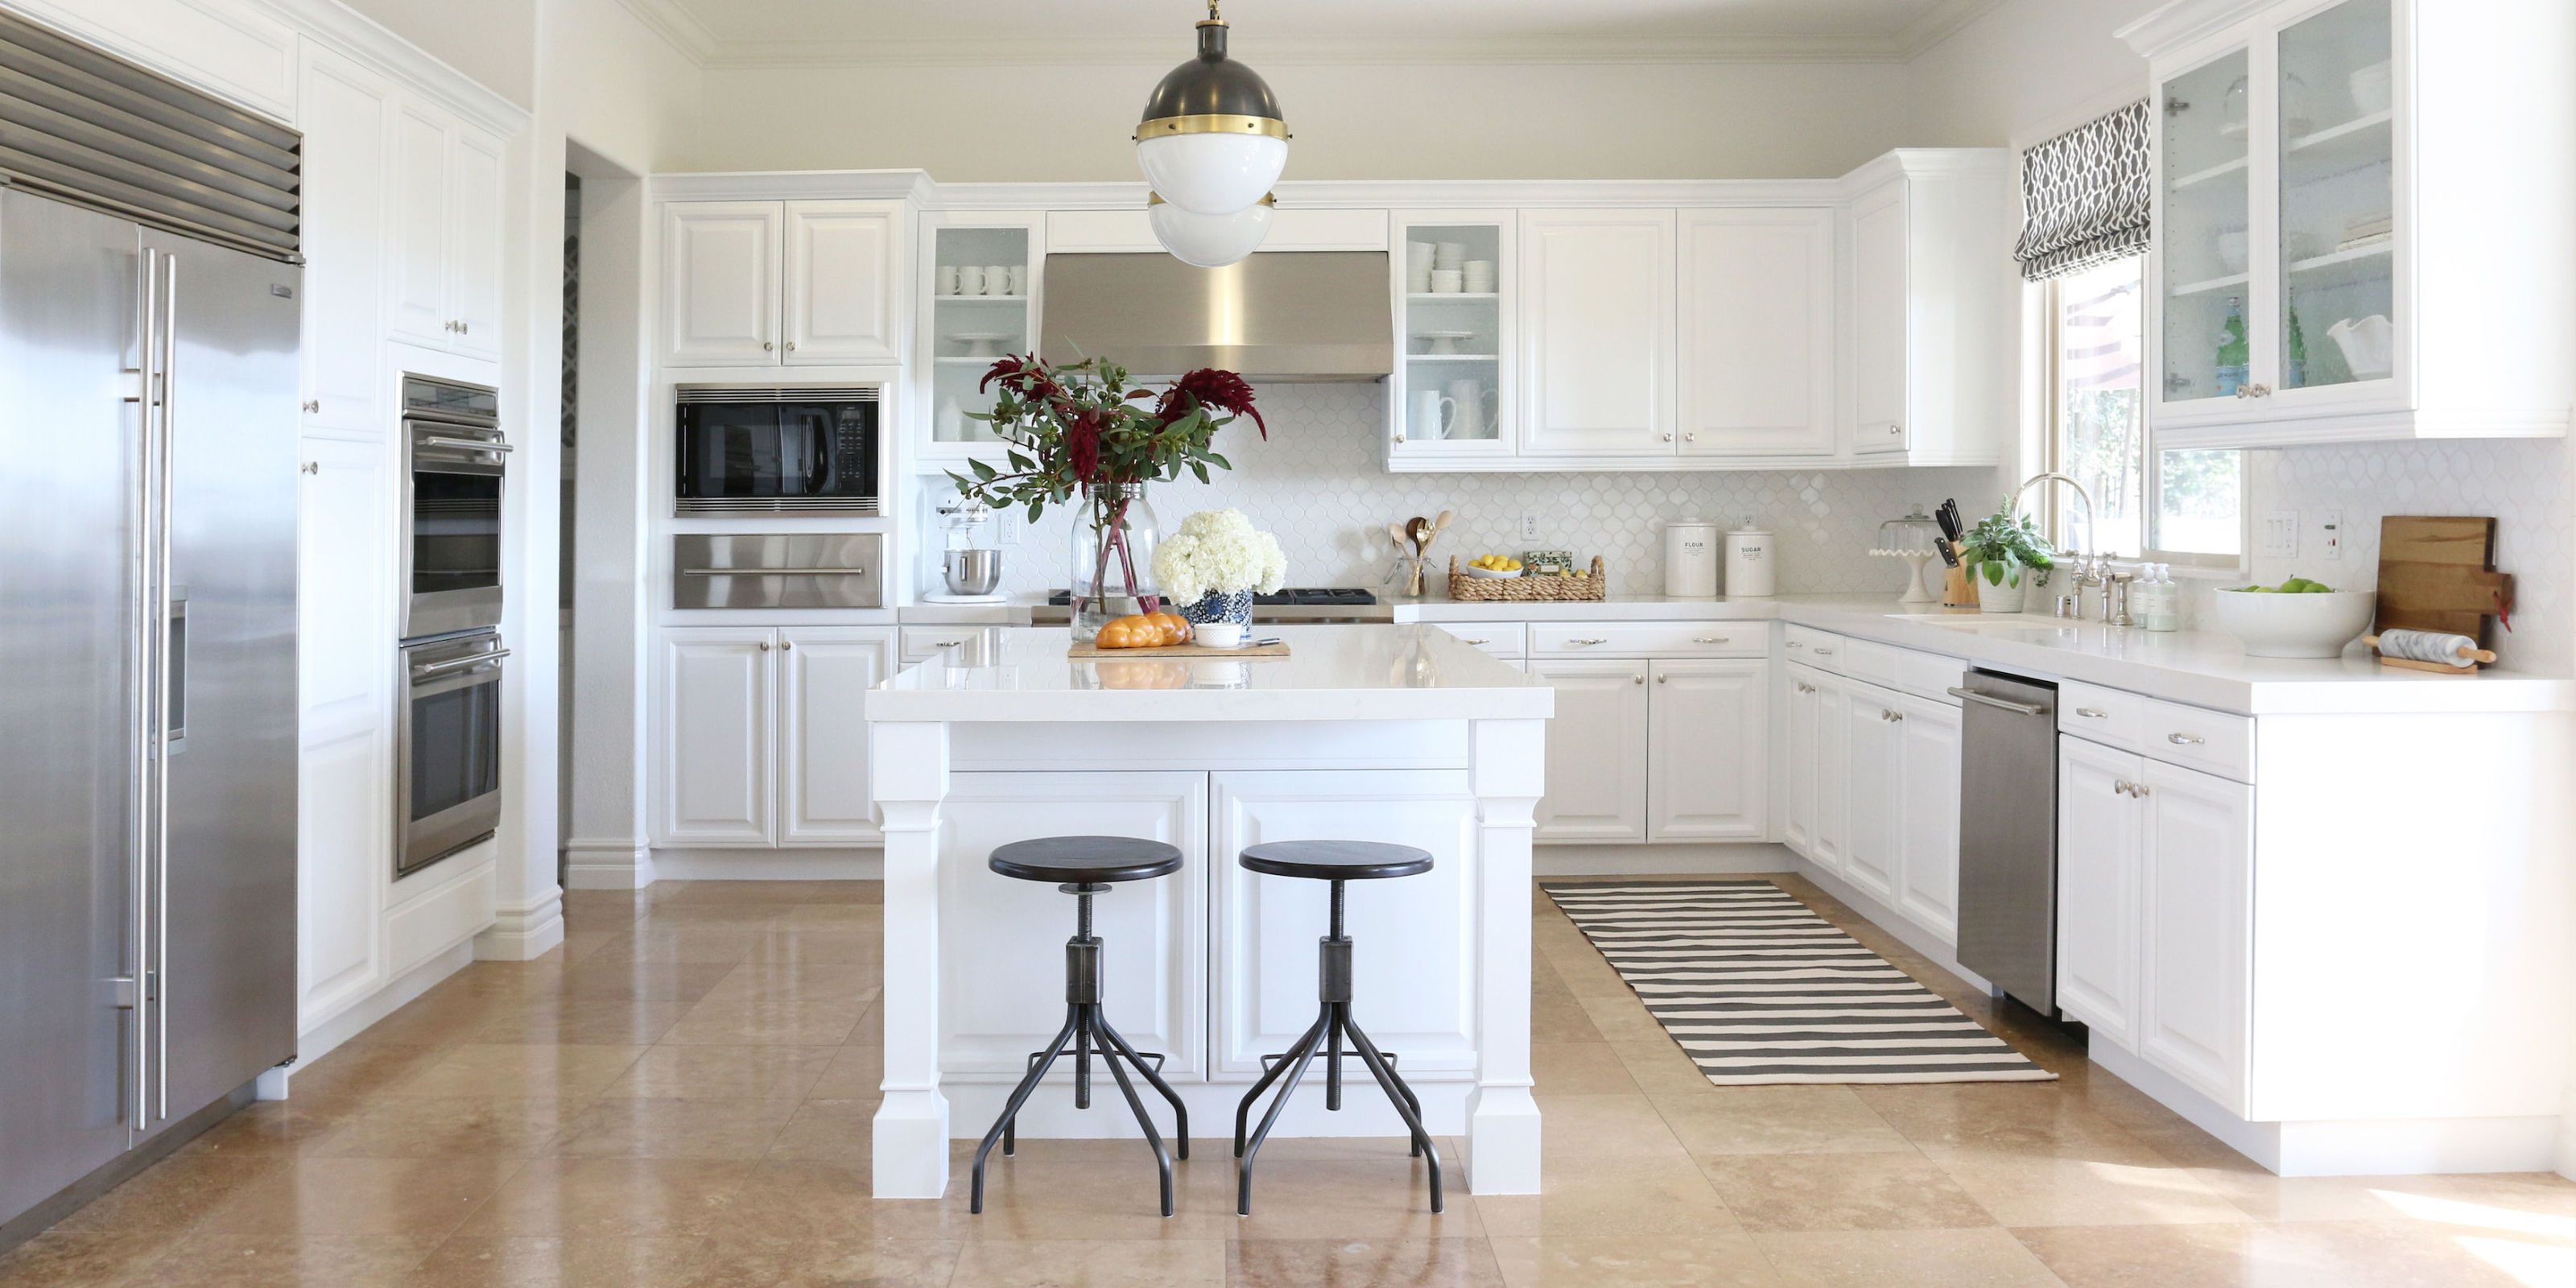 white kitchen cabinets courtesy of studio mcgee. bright, white cabinetry ... DJZDUQC